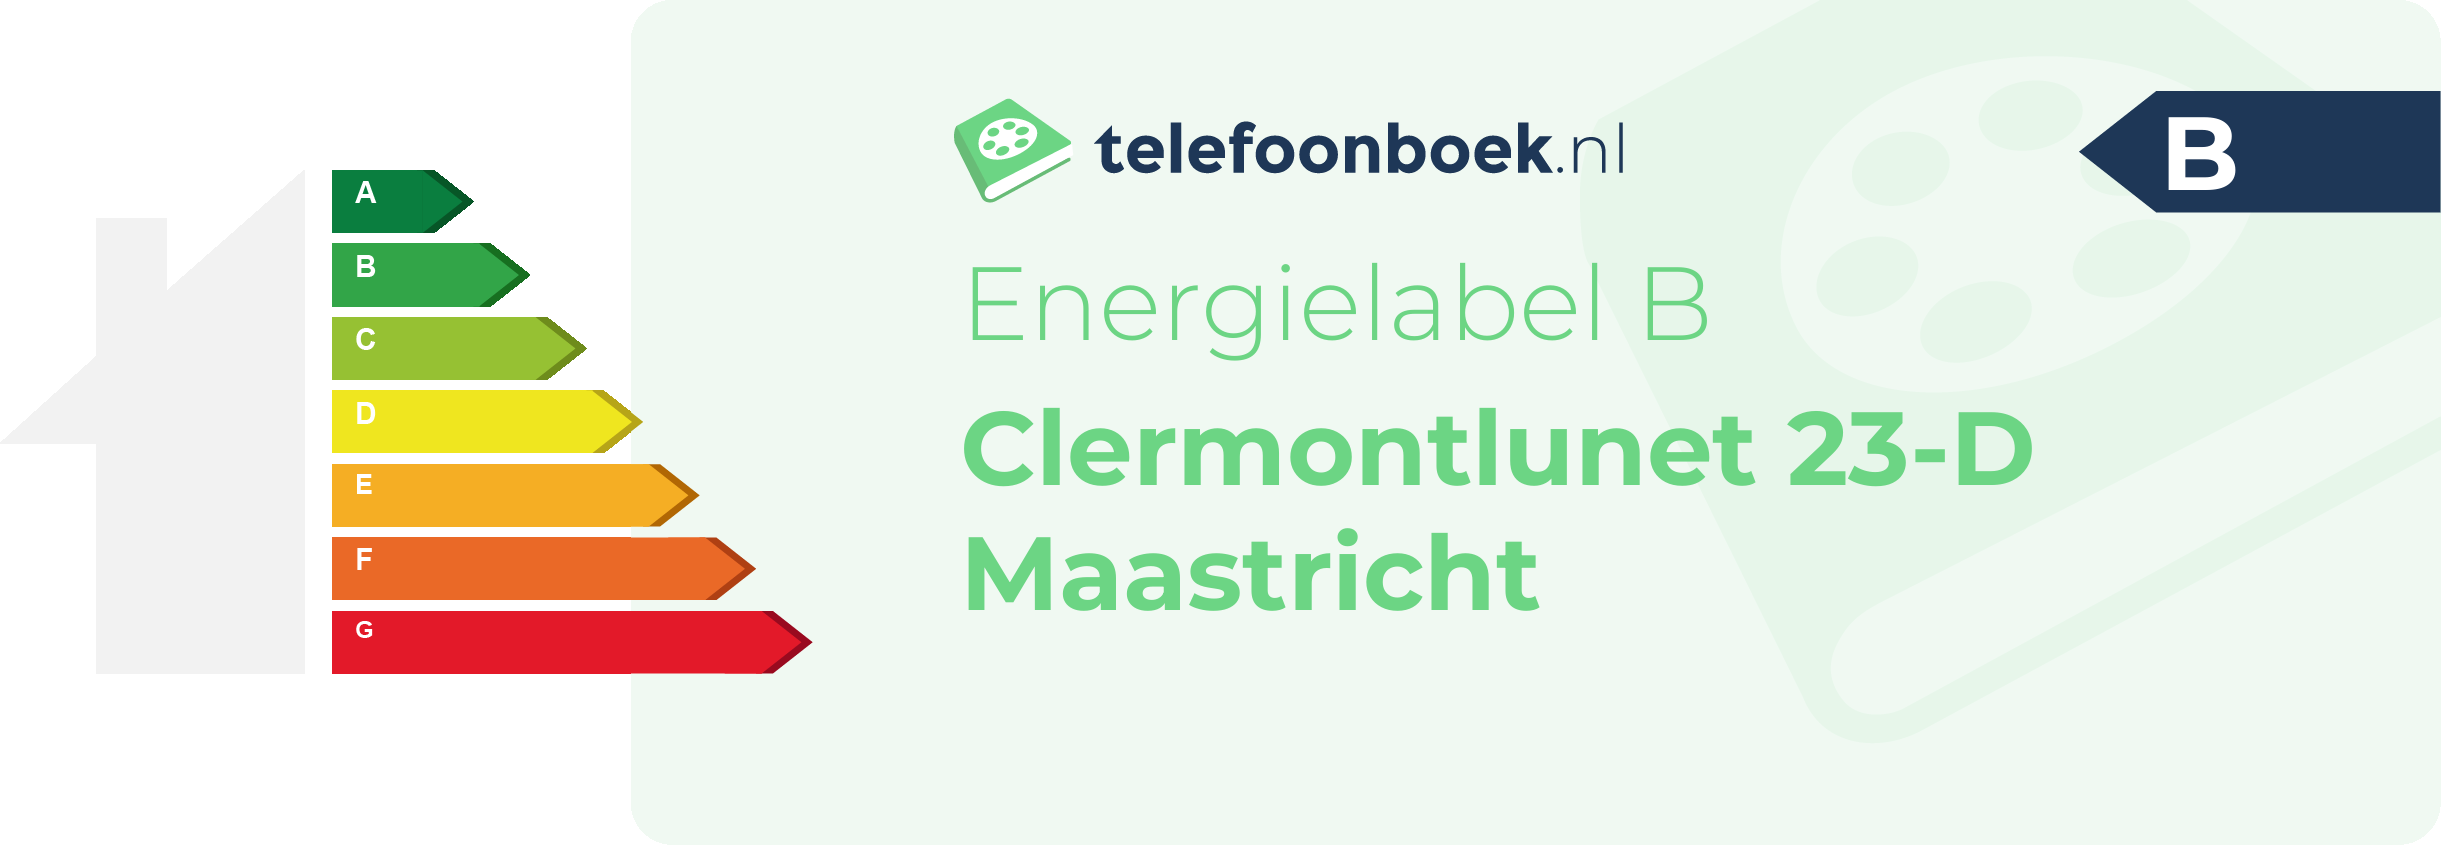 Energielabel Clermontlunet 23-D Maastricht